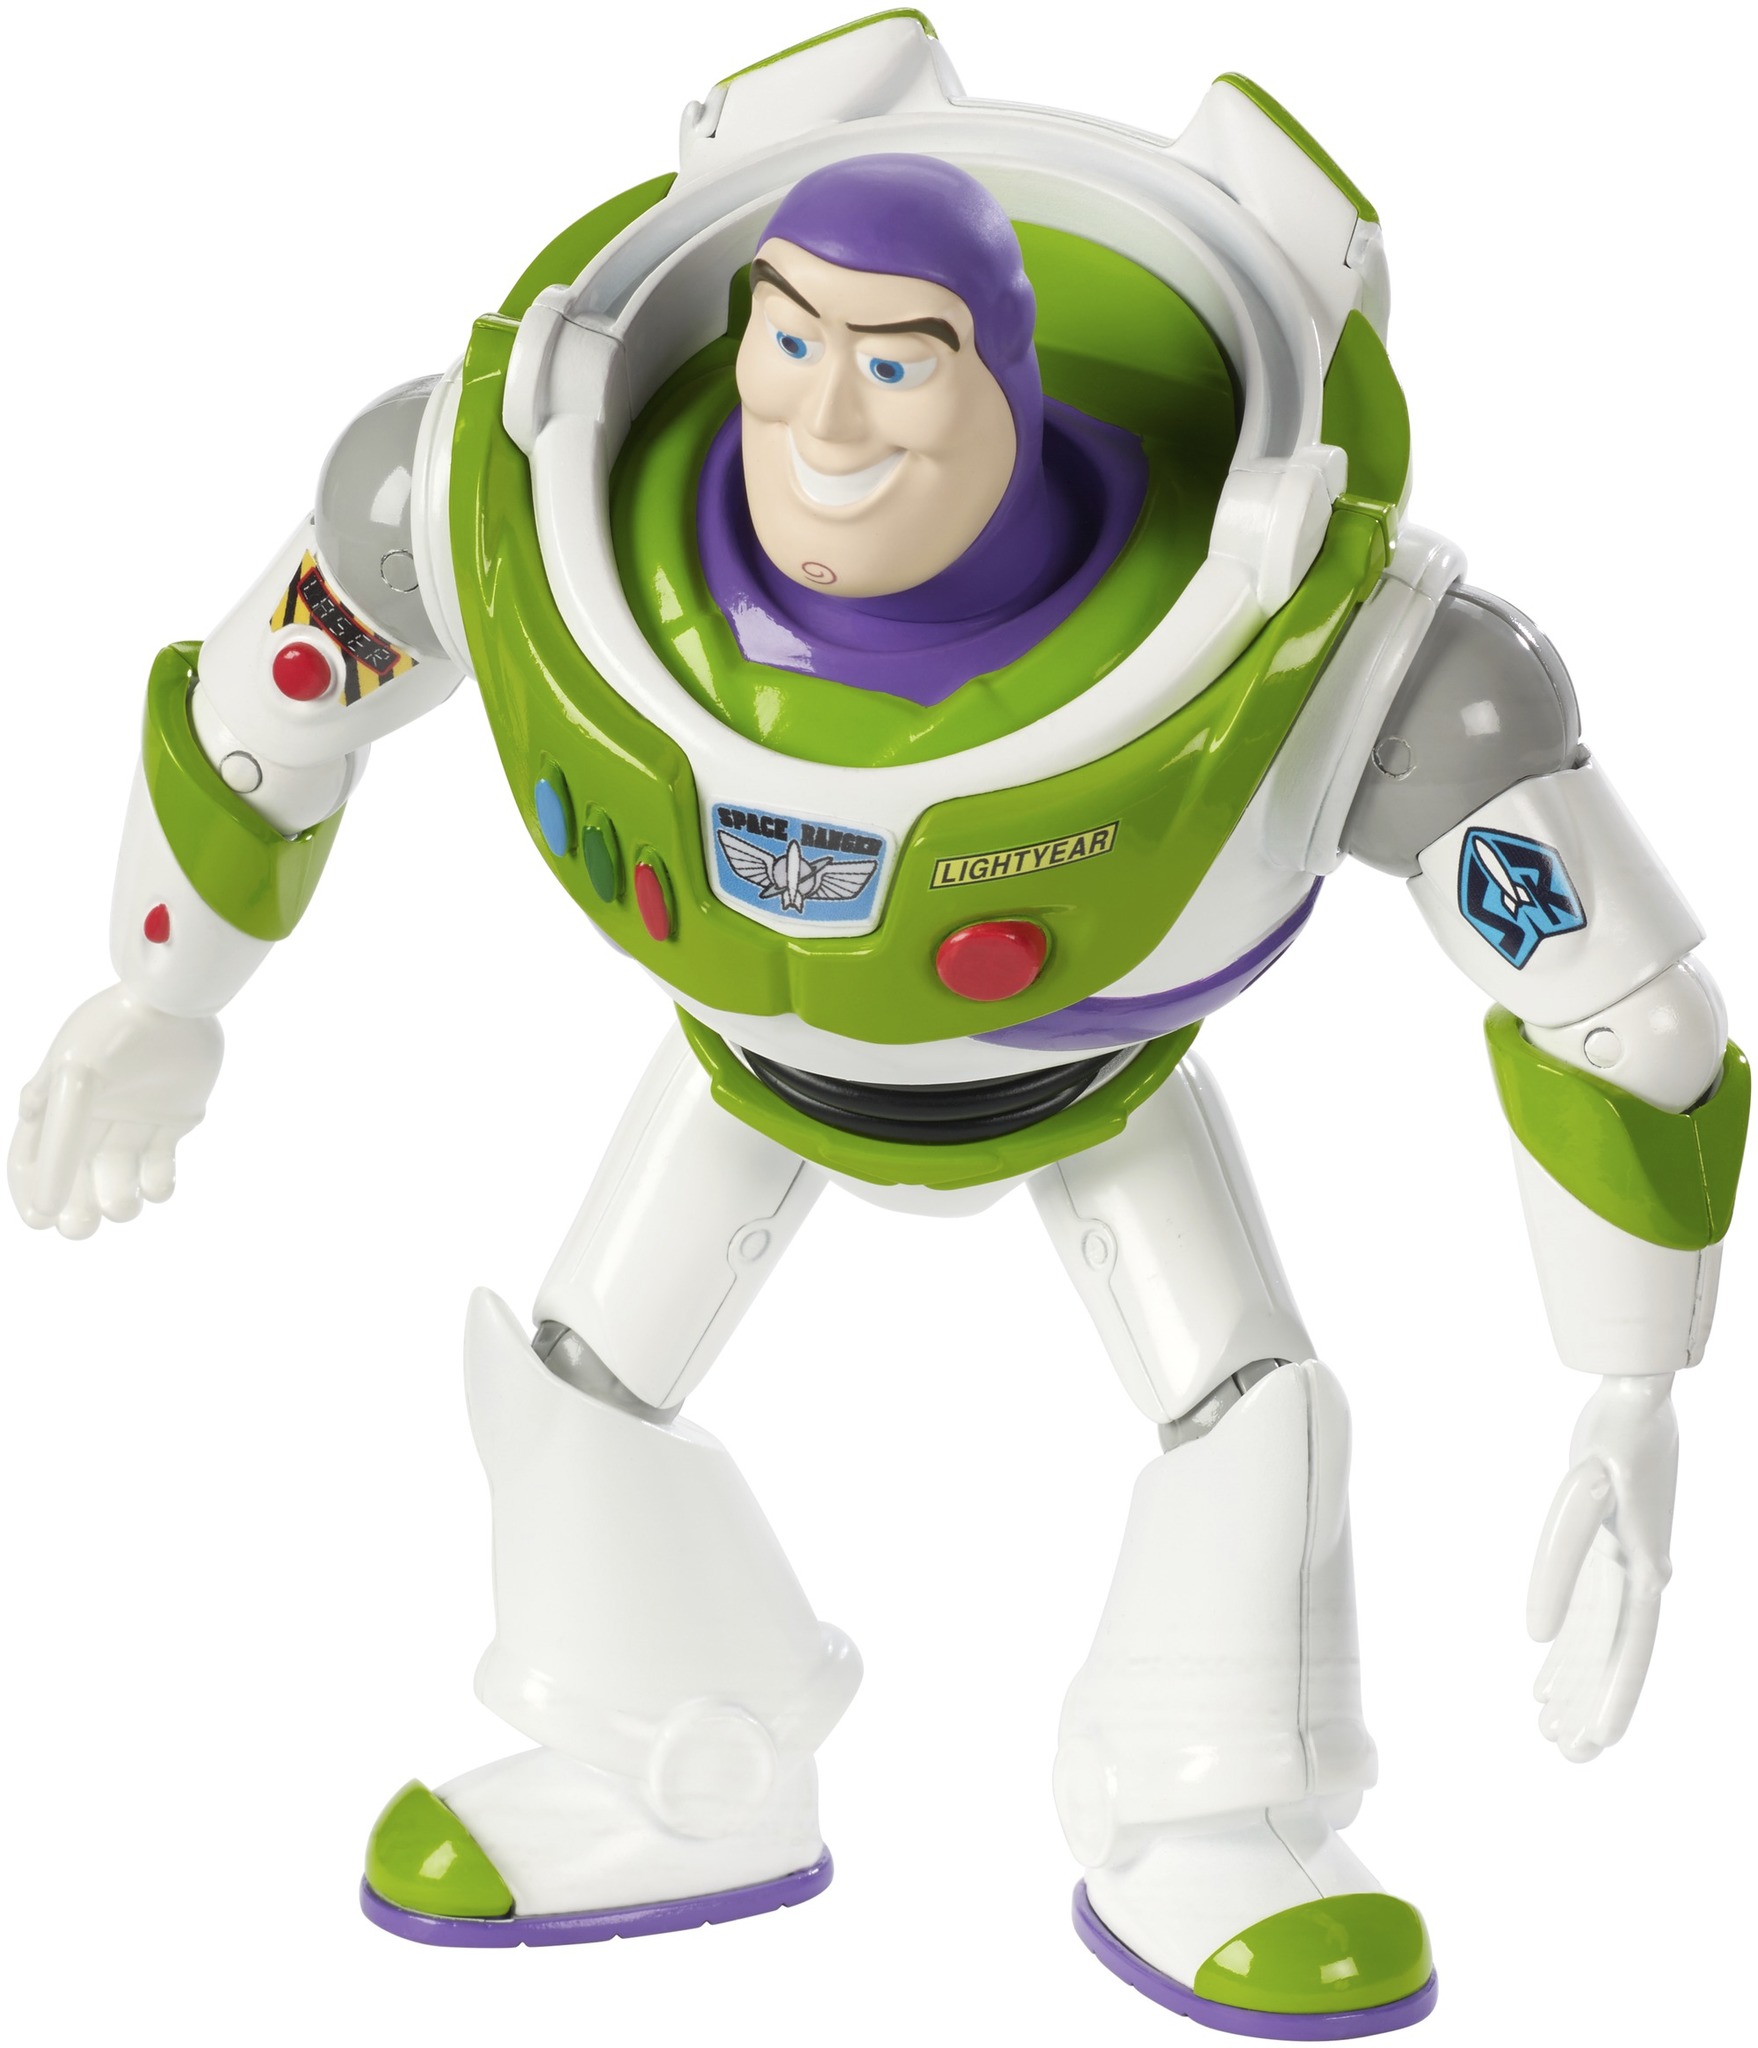 Buzz Lightyear Toy Story 4 bewegliche 19 cm Action Figur 